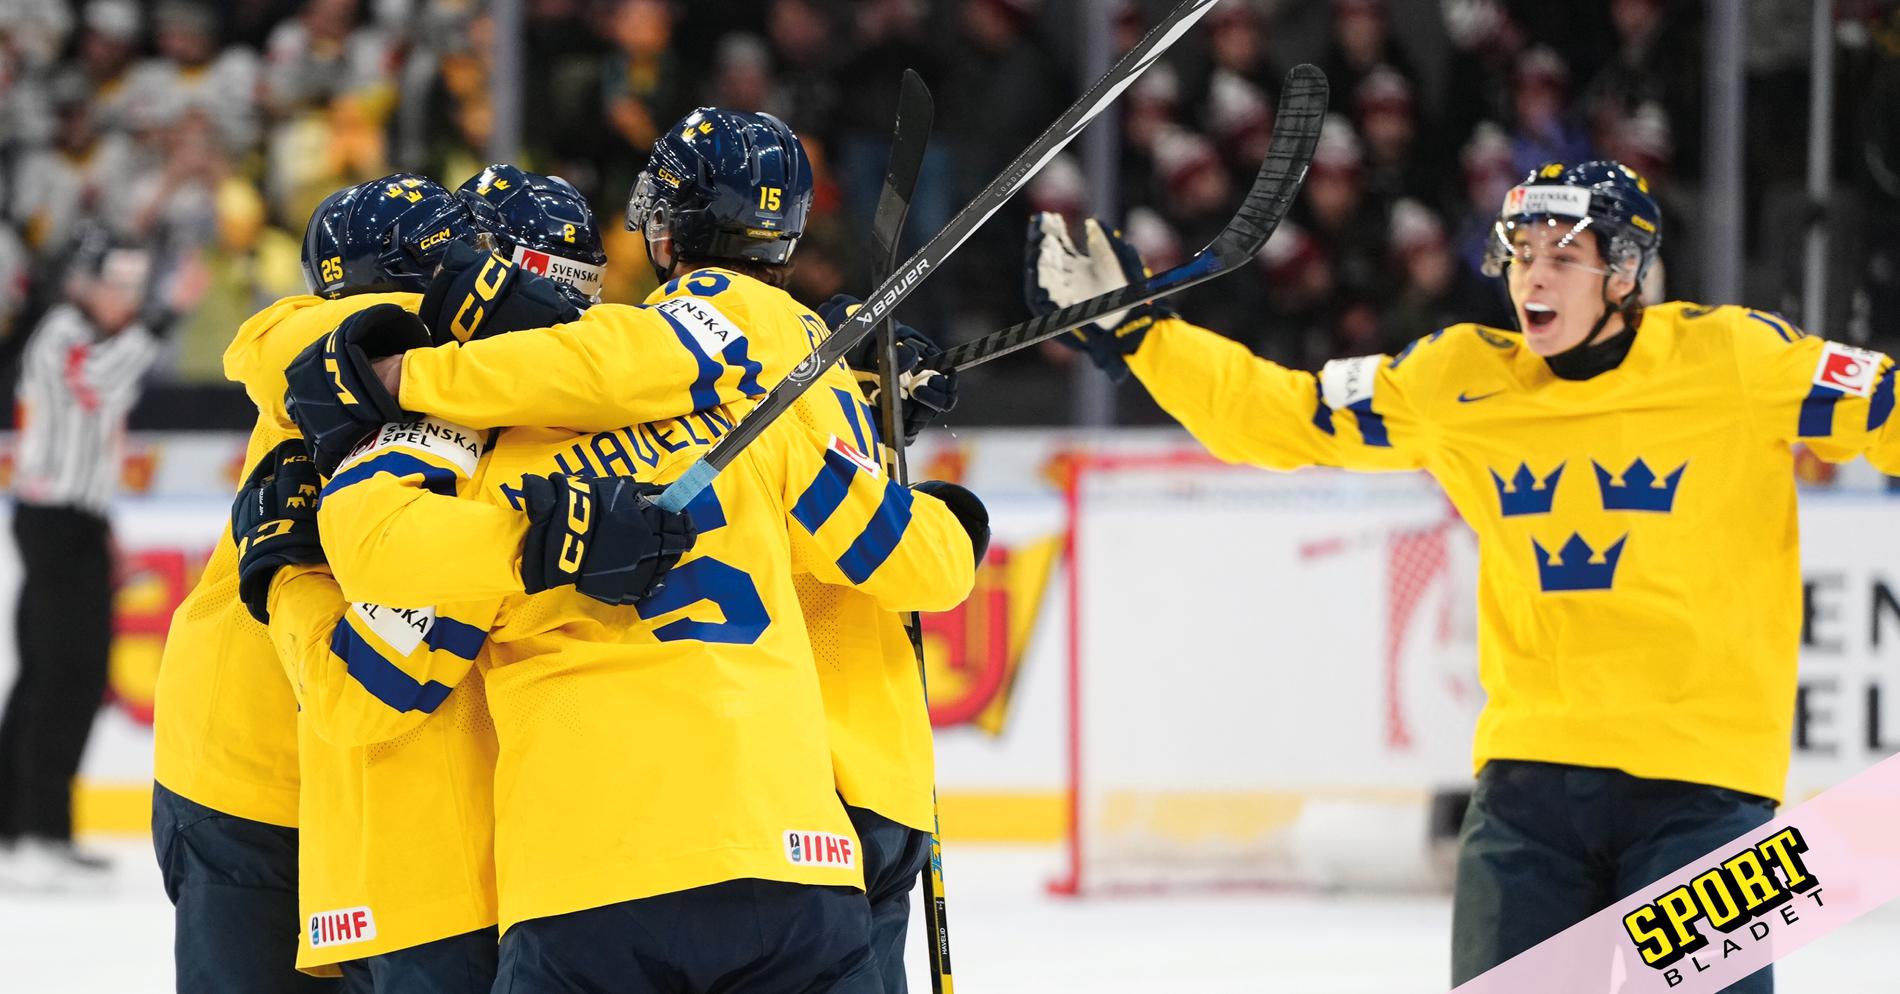 Sweden’s Axel Sandin Pellikka Named Hero of Dramatic Junior Quarter-final Win Against Switzerland